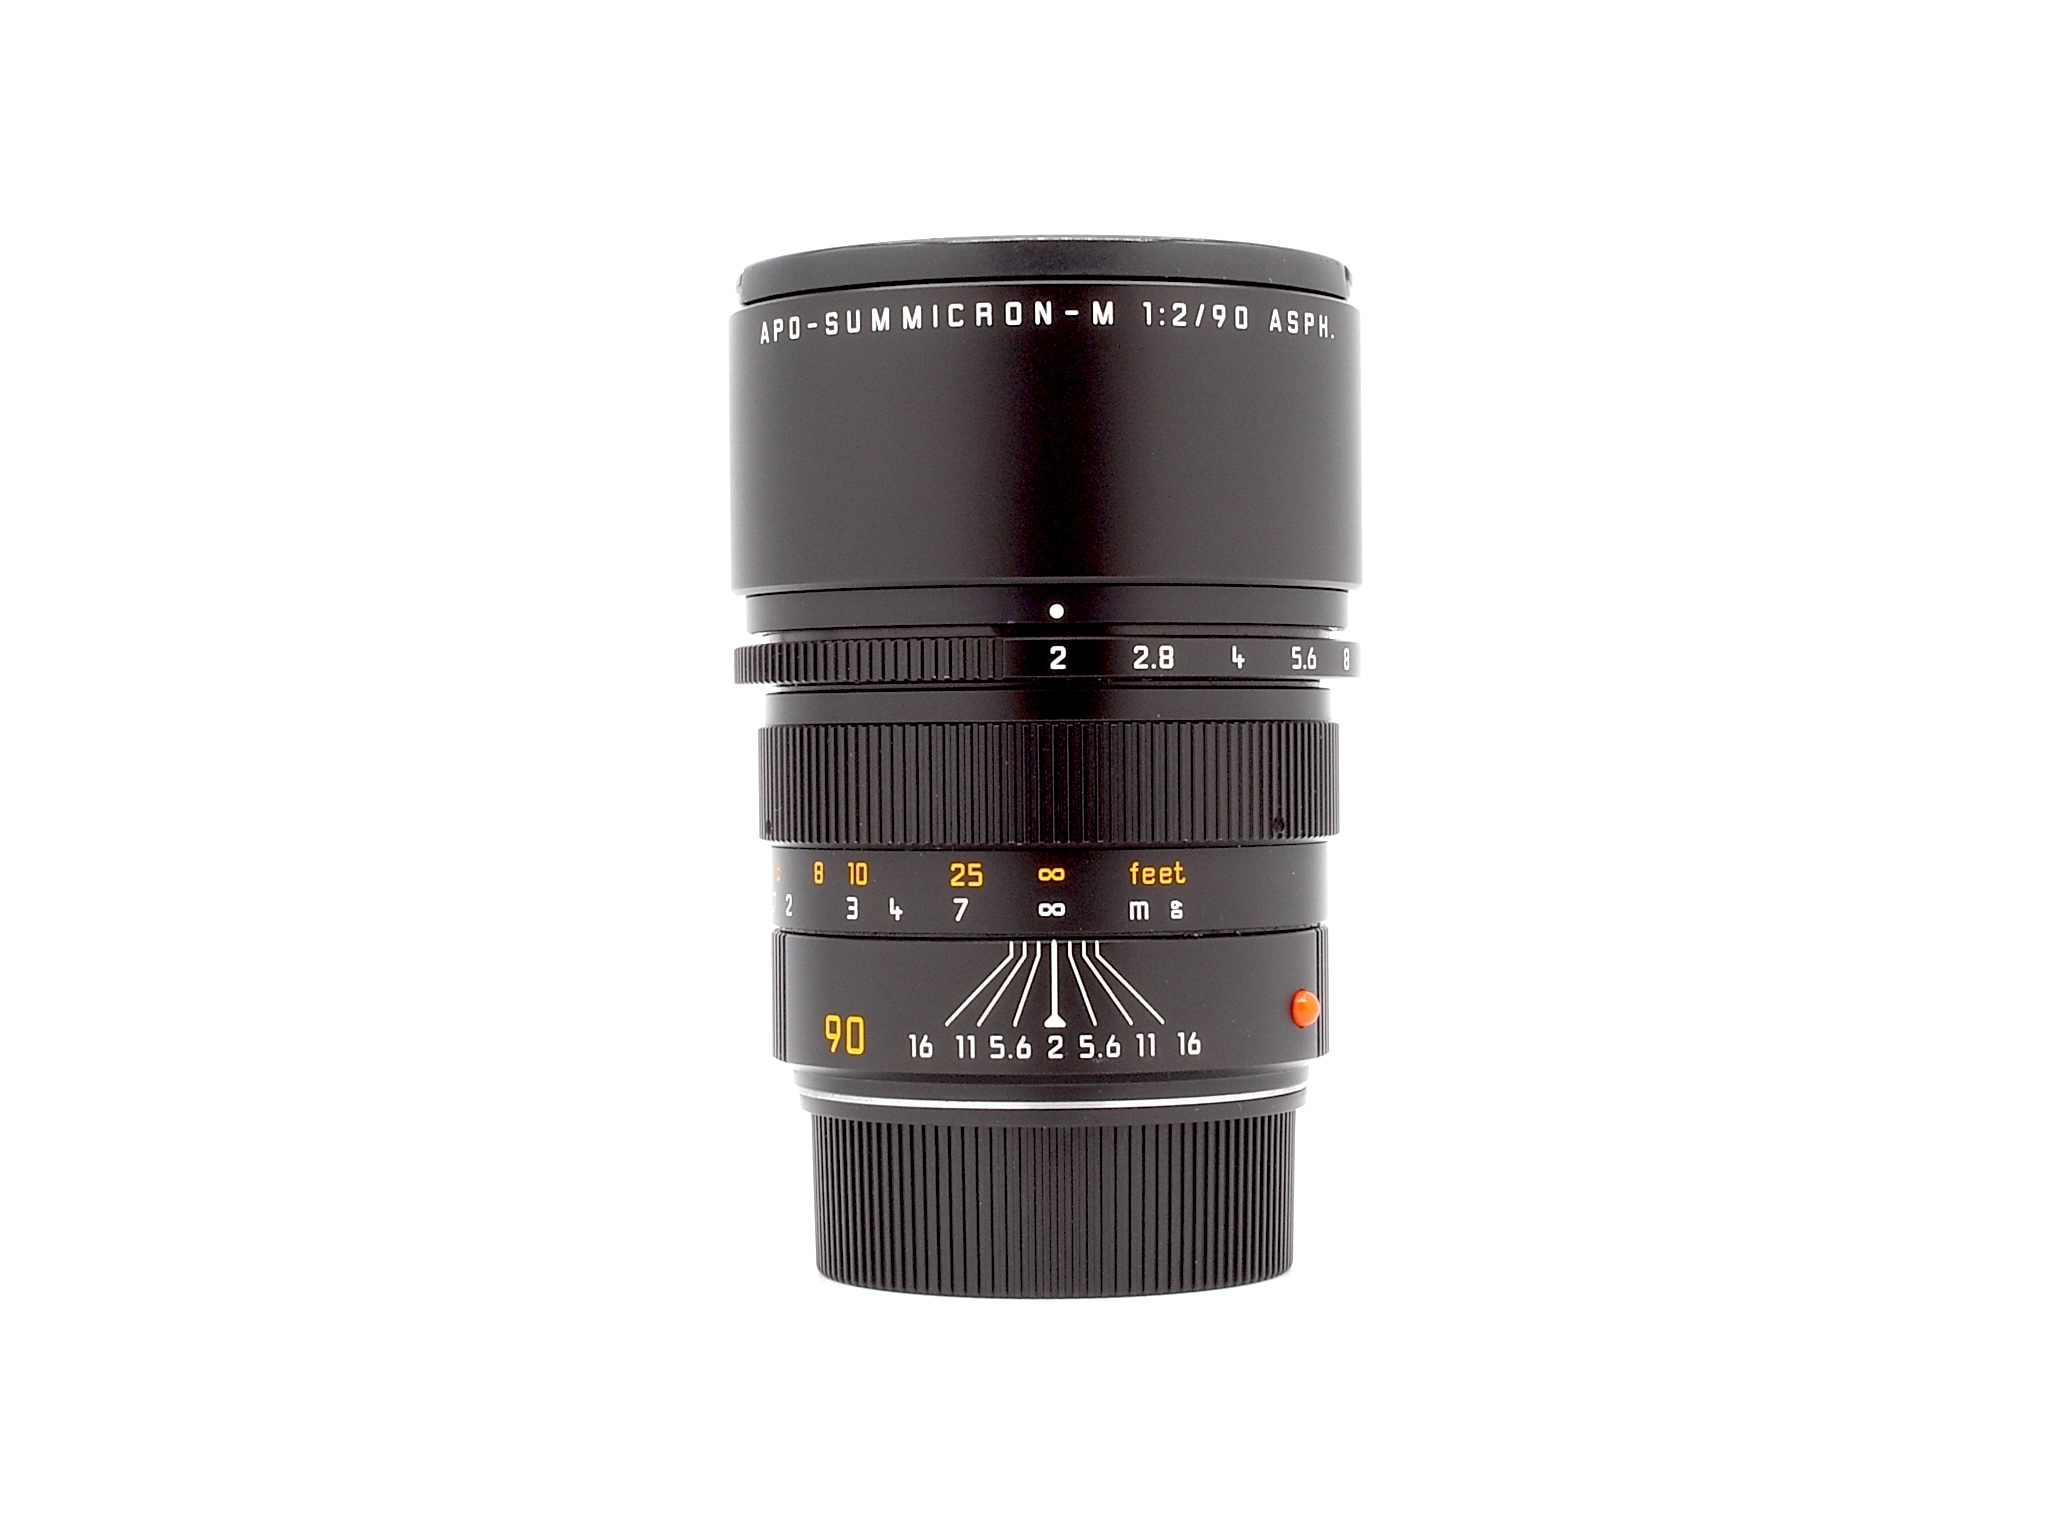 Leica APO-Summicron-M 2/90mm ASPH. 6Bit black